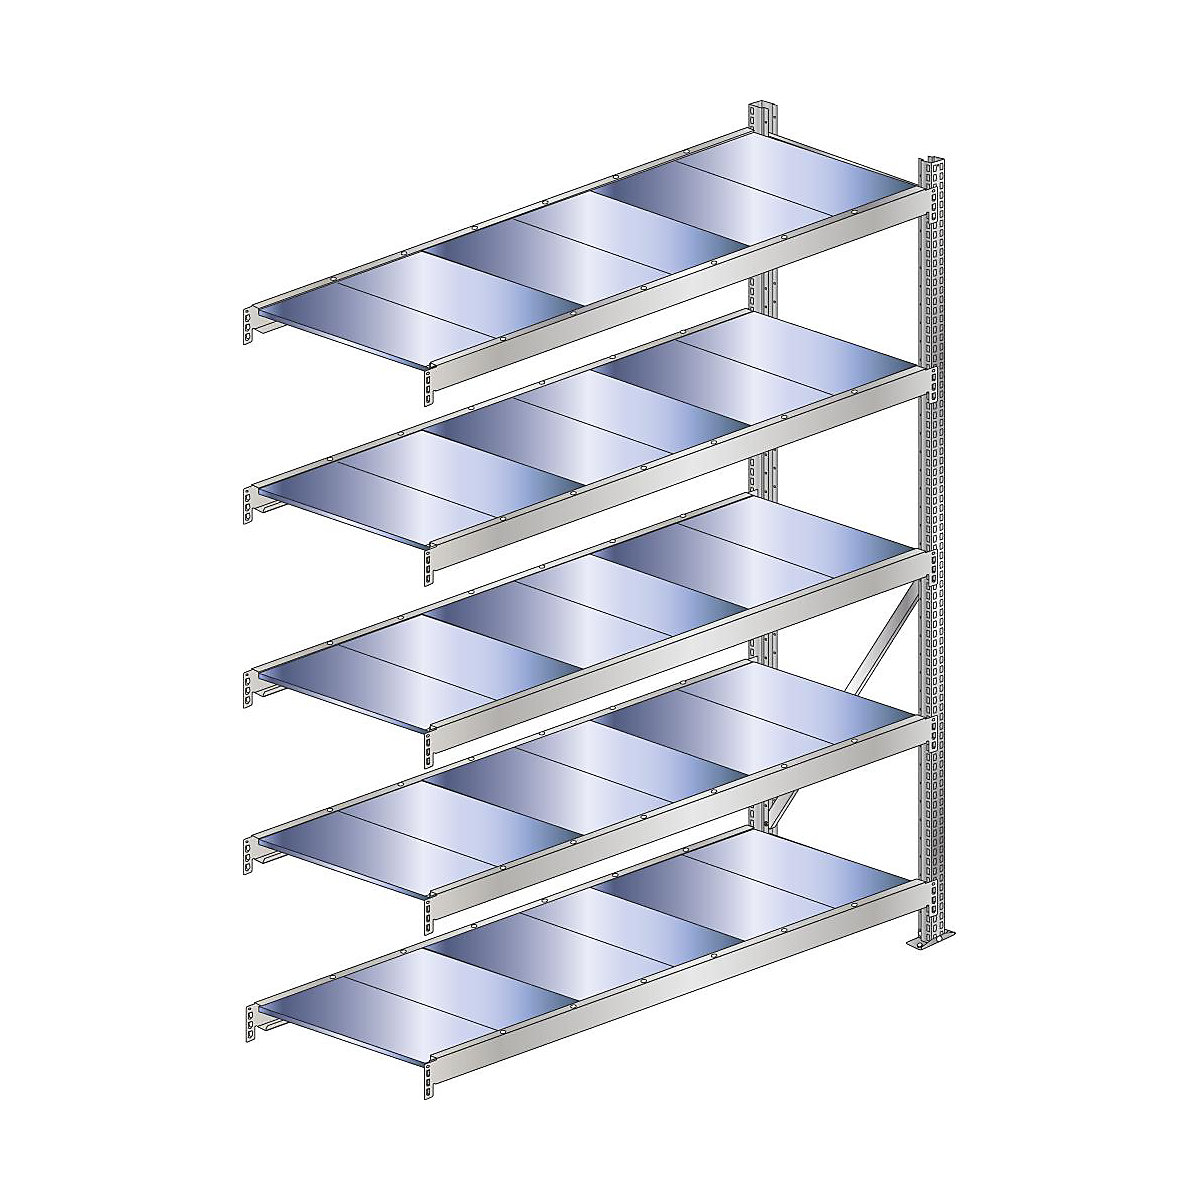 Wide span shelf unit, shelf load 500 kg – SCHULTE, shelf width 2500 mm, extension shelf unit, height 3000 mm, depth 500 mm